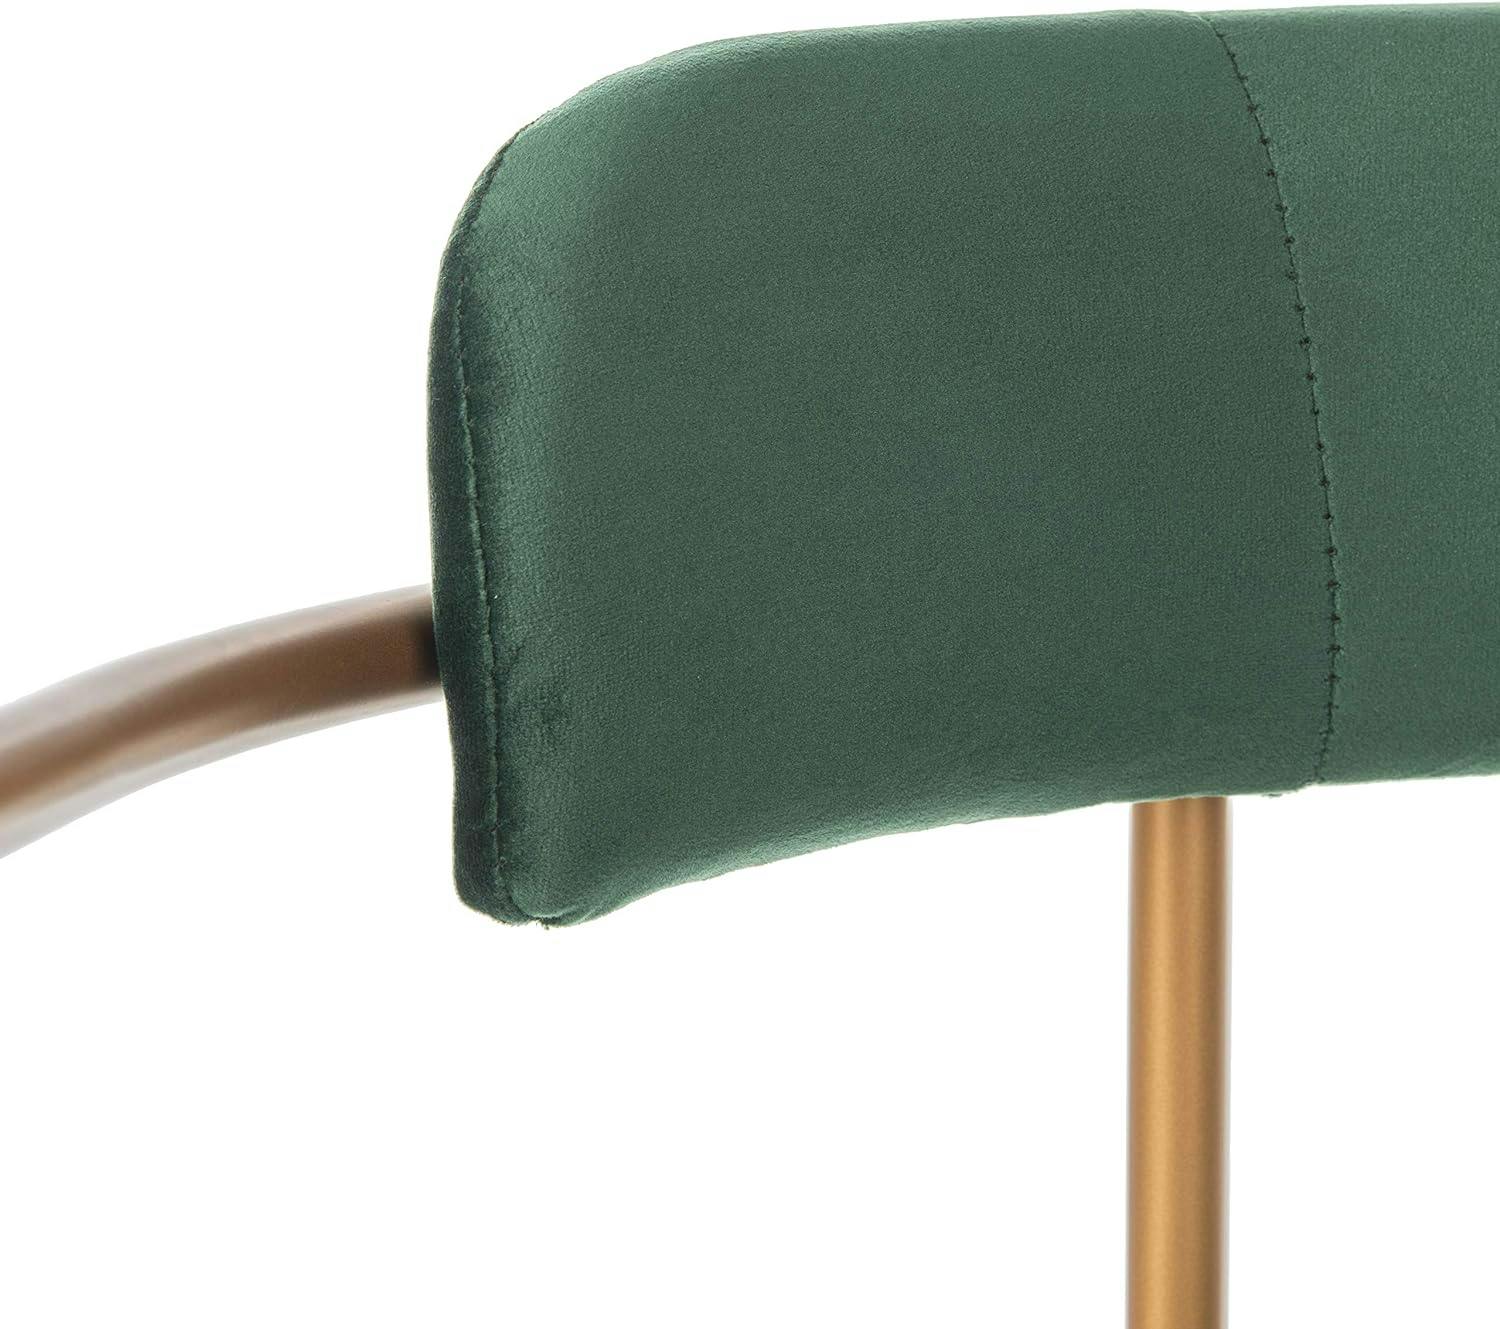 Malachite Green Velvet & Gold Metal Upholstered Side Chair